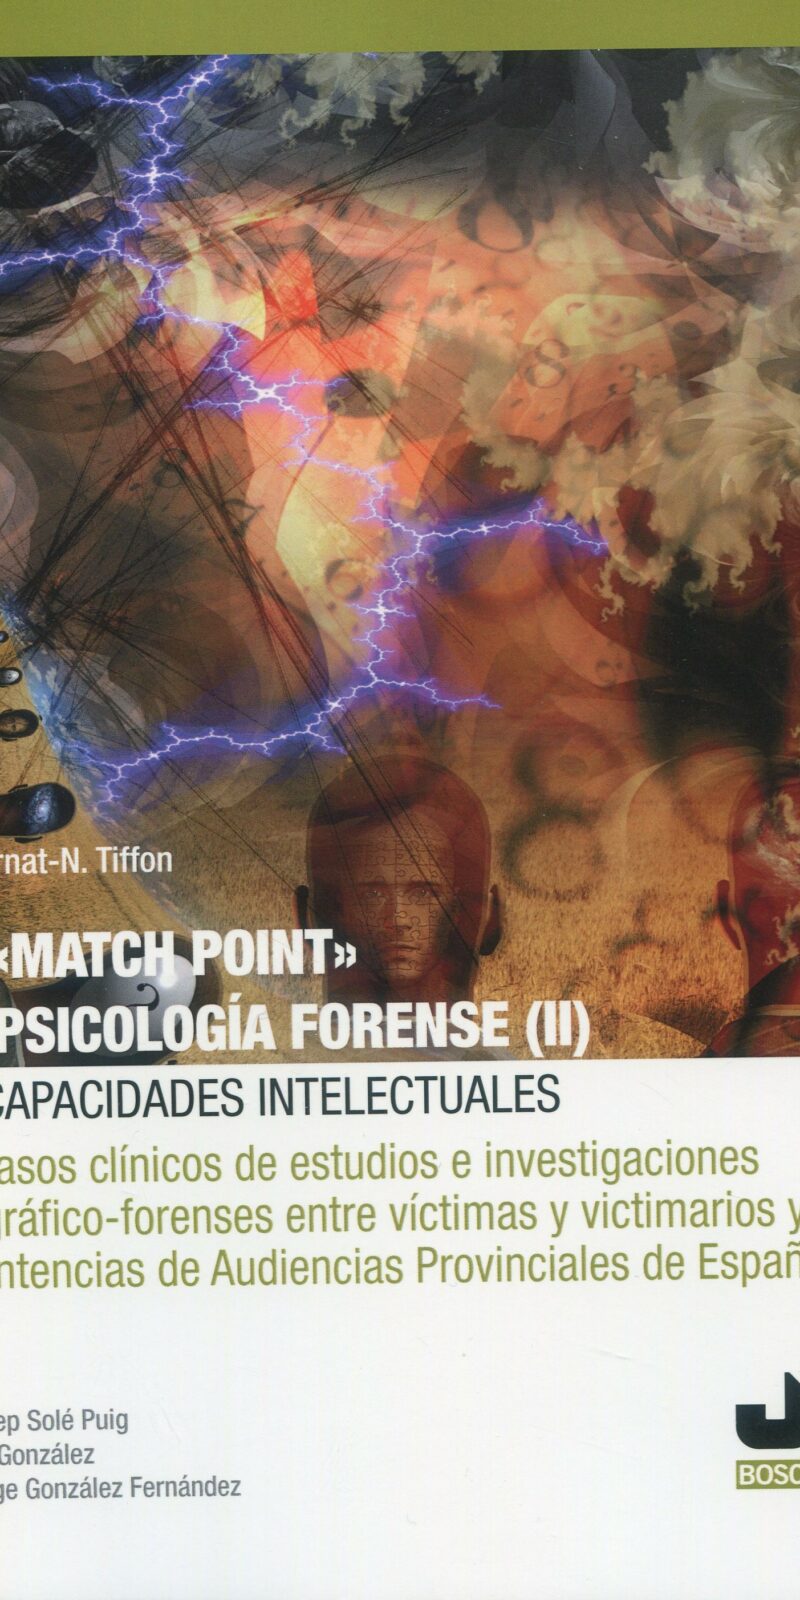 Match point en psicología forense II 9788419580887